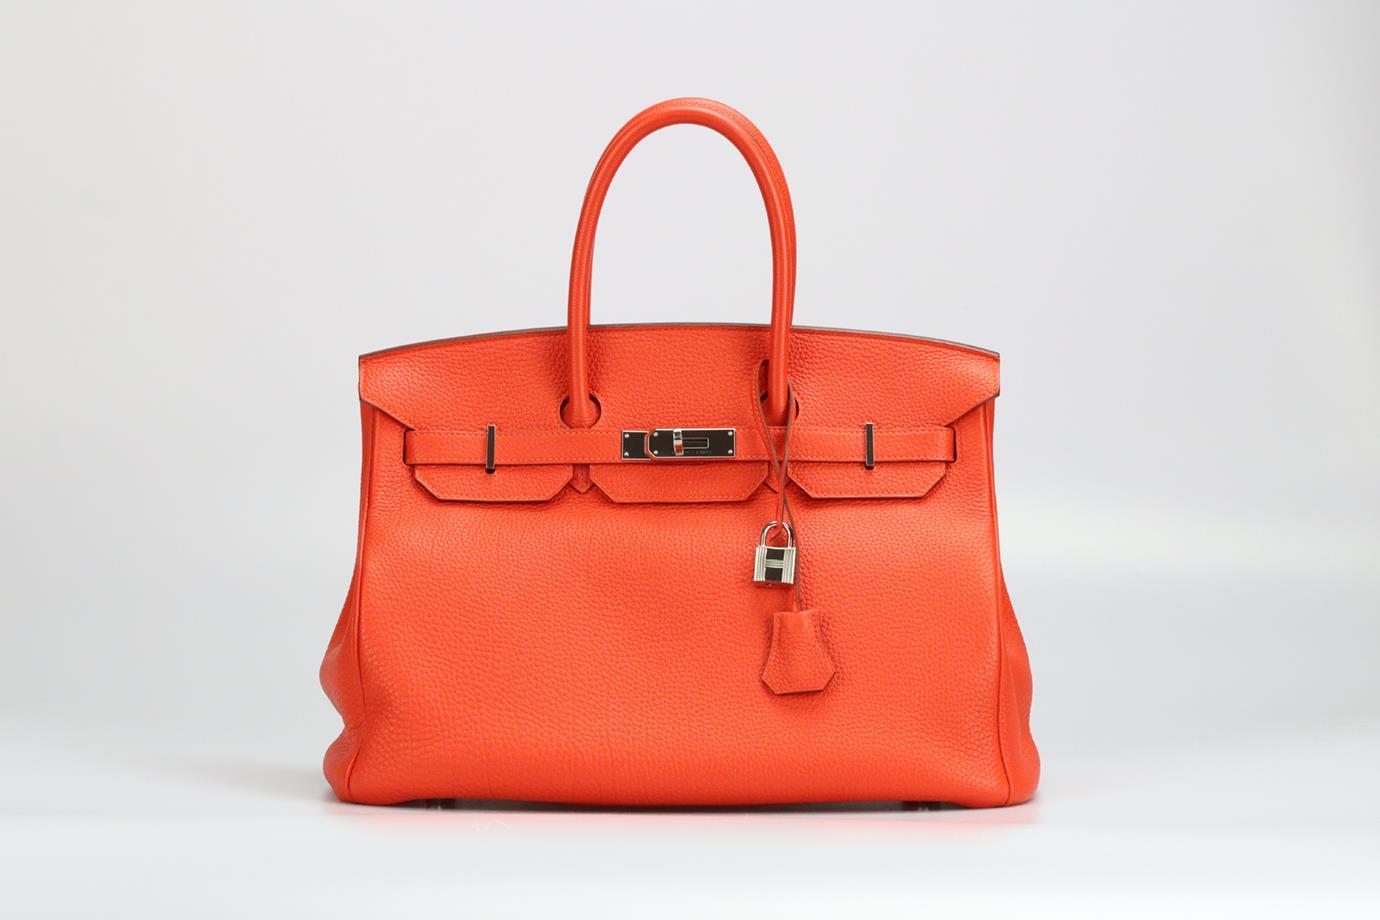 <ul>
<li>Hermès 2013 Birkin 35Cm Togo Leather Bag.</li>
<li>Orange.</li>
<li>Twist lock fastening - Front.</li>
<li>Comes with - key, lock and clochette.</li>
<li>Does not come with - dustbag or box.</li>
<li>Model: Birkin 35.</li>
<li>Made in